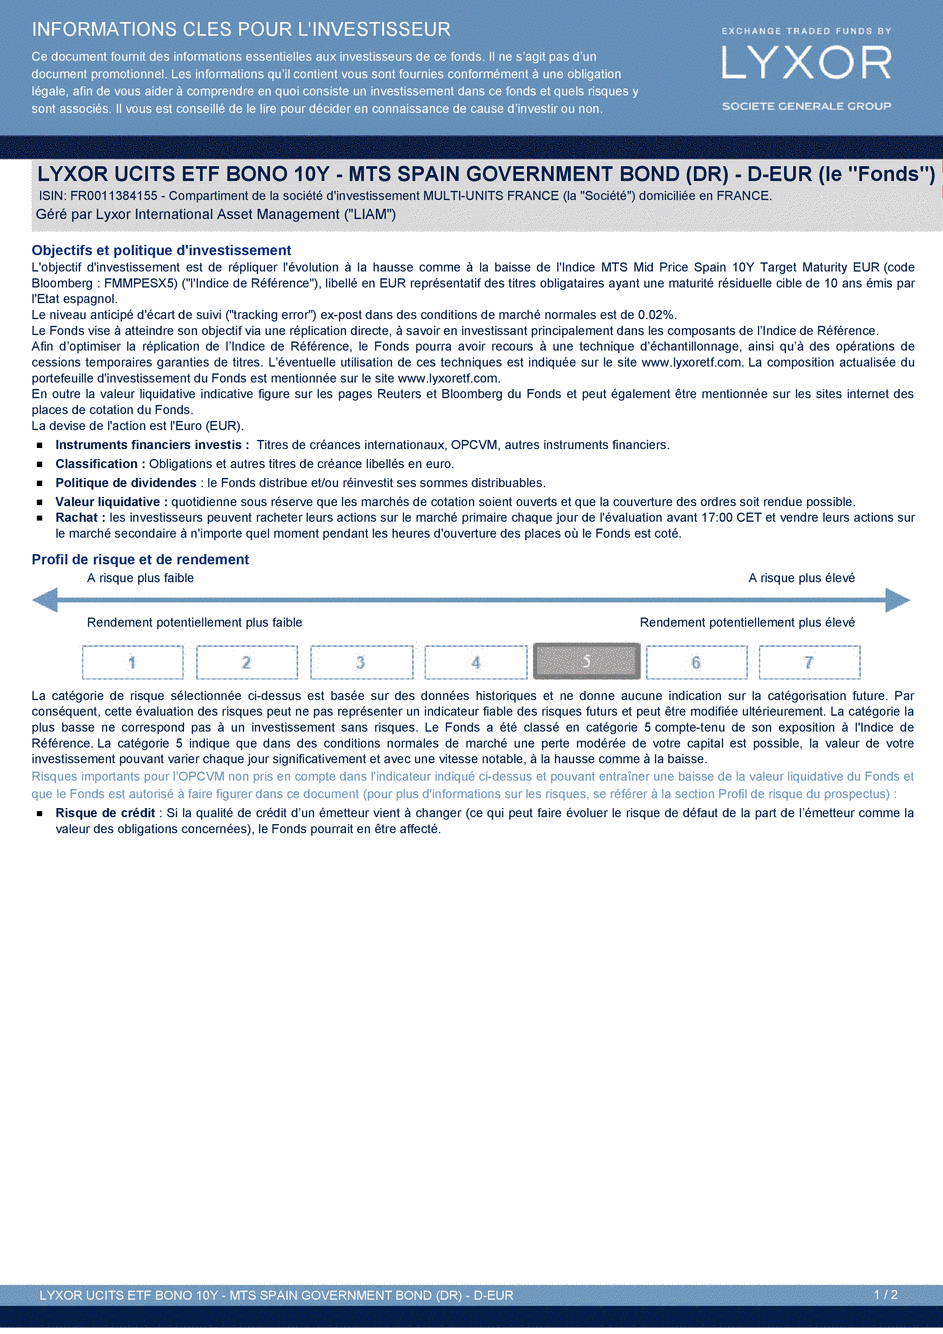 DICI LYXOR UCITS ETF BONO 10Y – MTS SPAIN GOVERNMENT BOND (DR) D - 18/12/2014 - Français